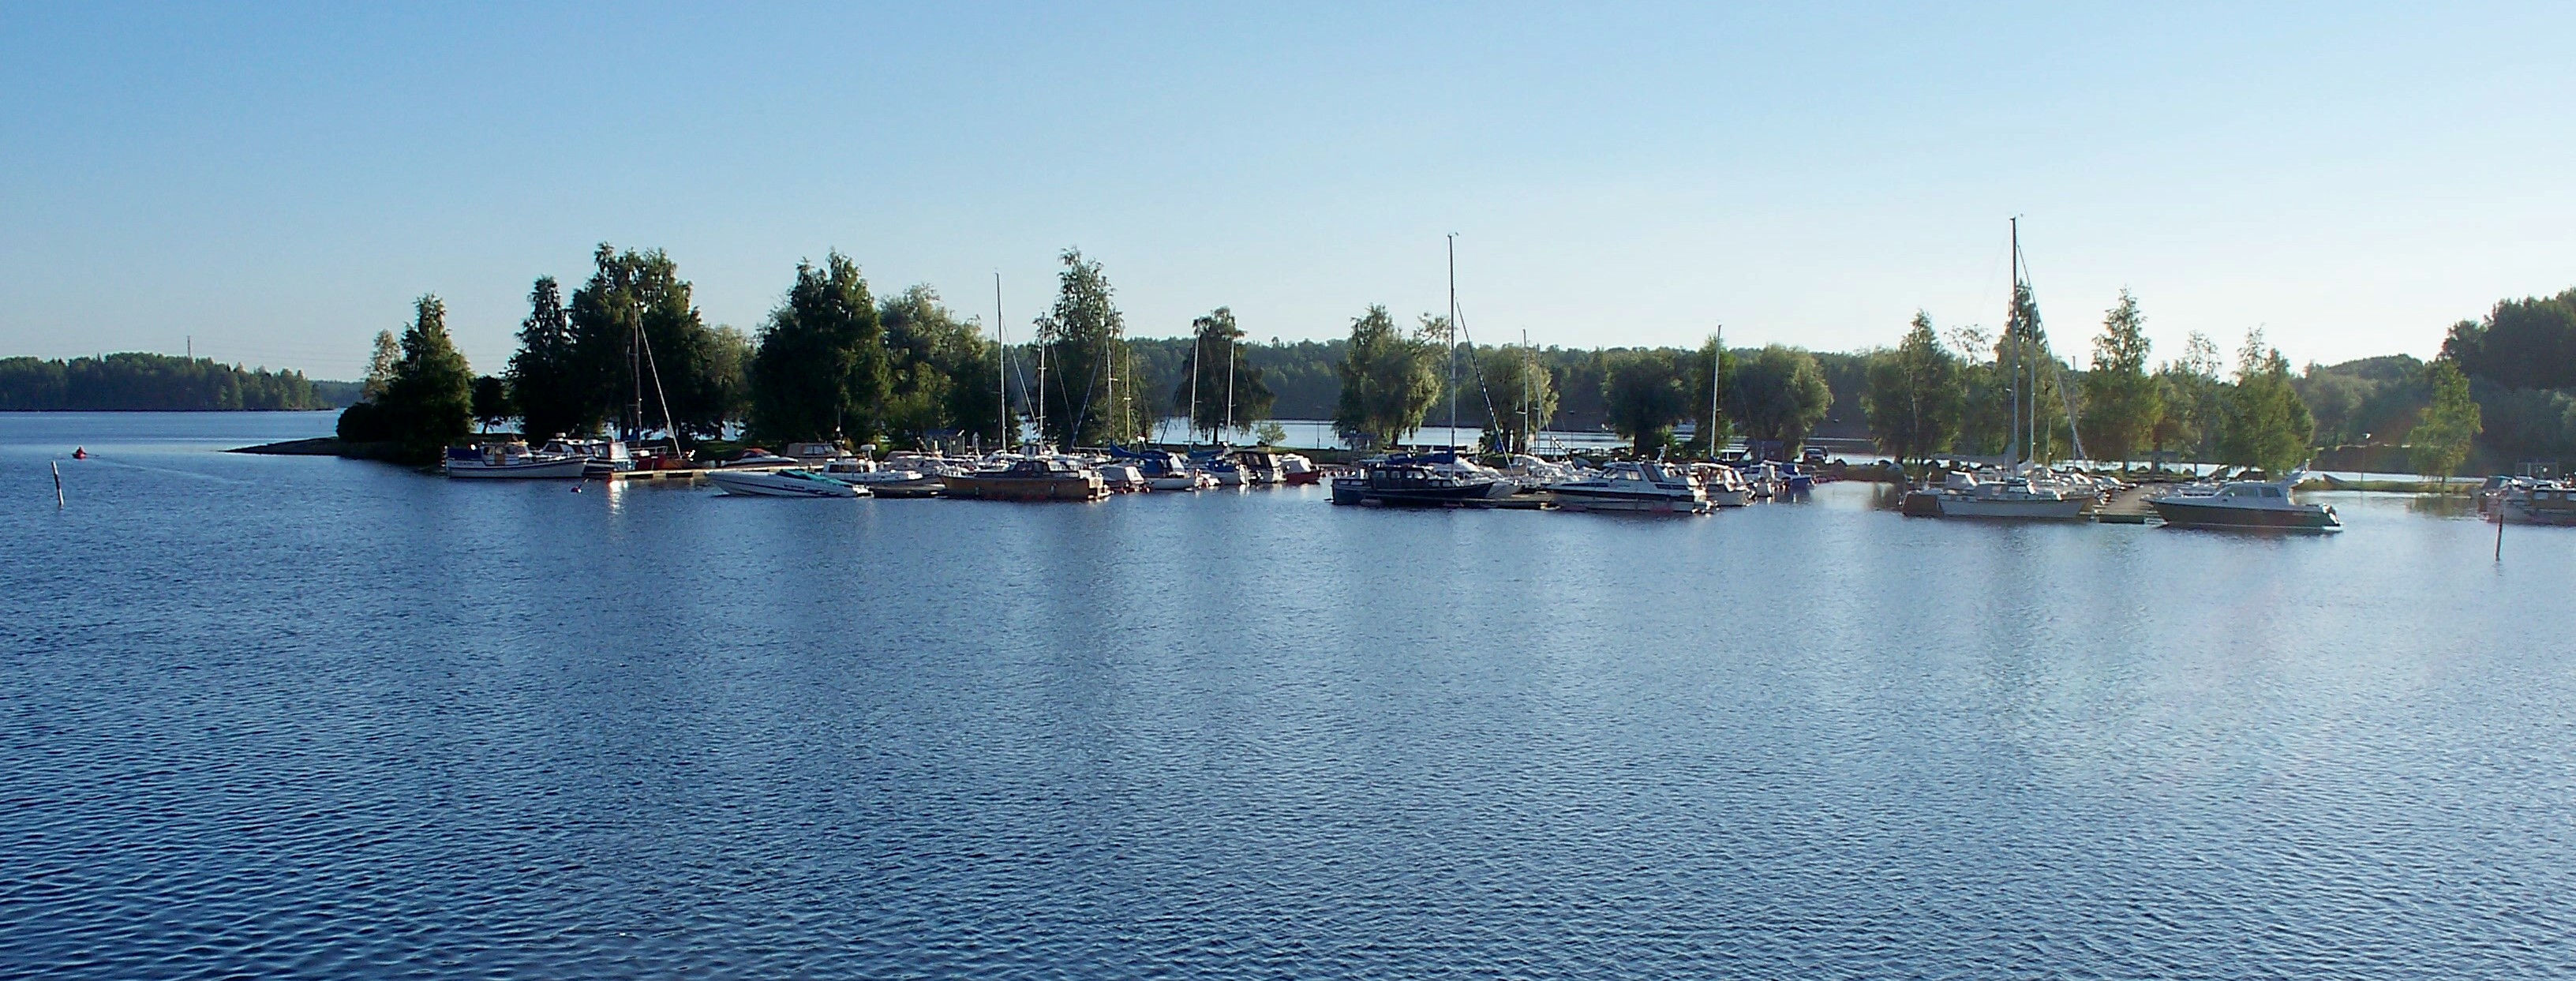 Saimaa Canal, Finland